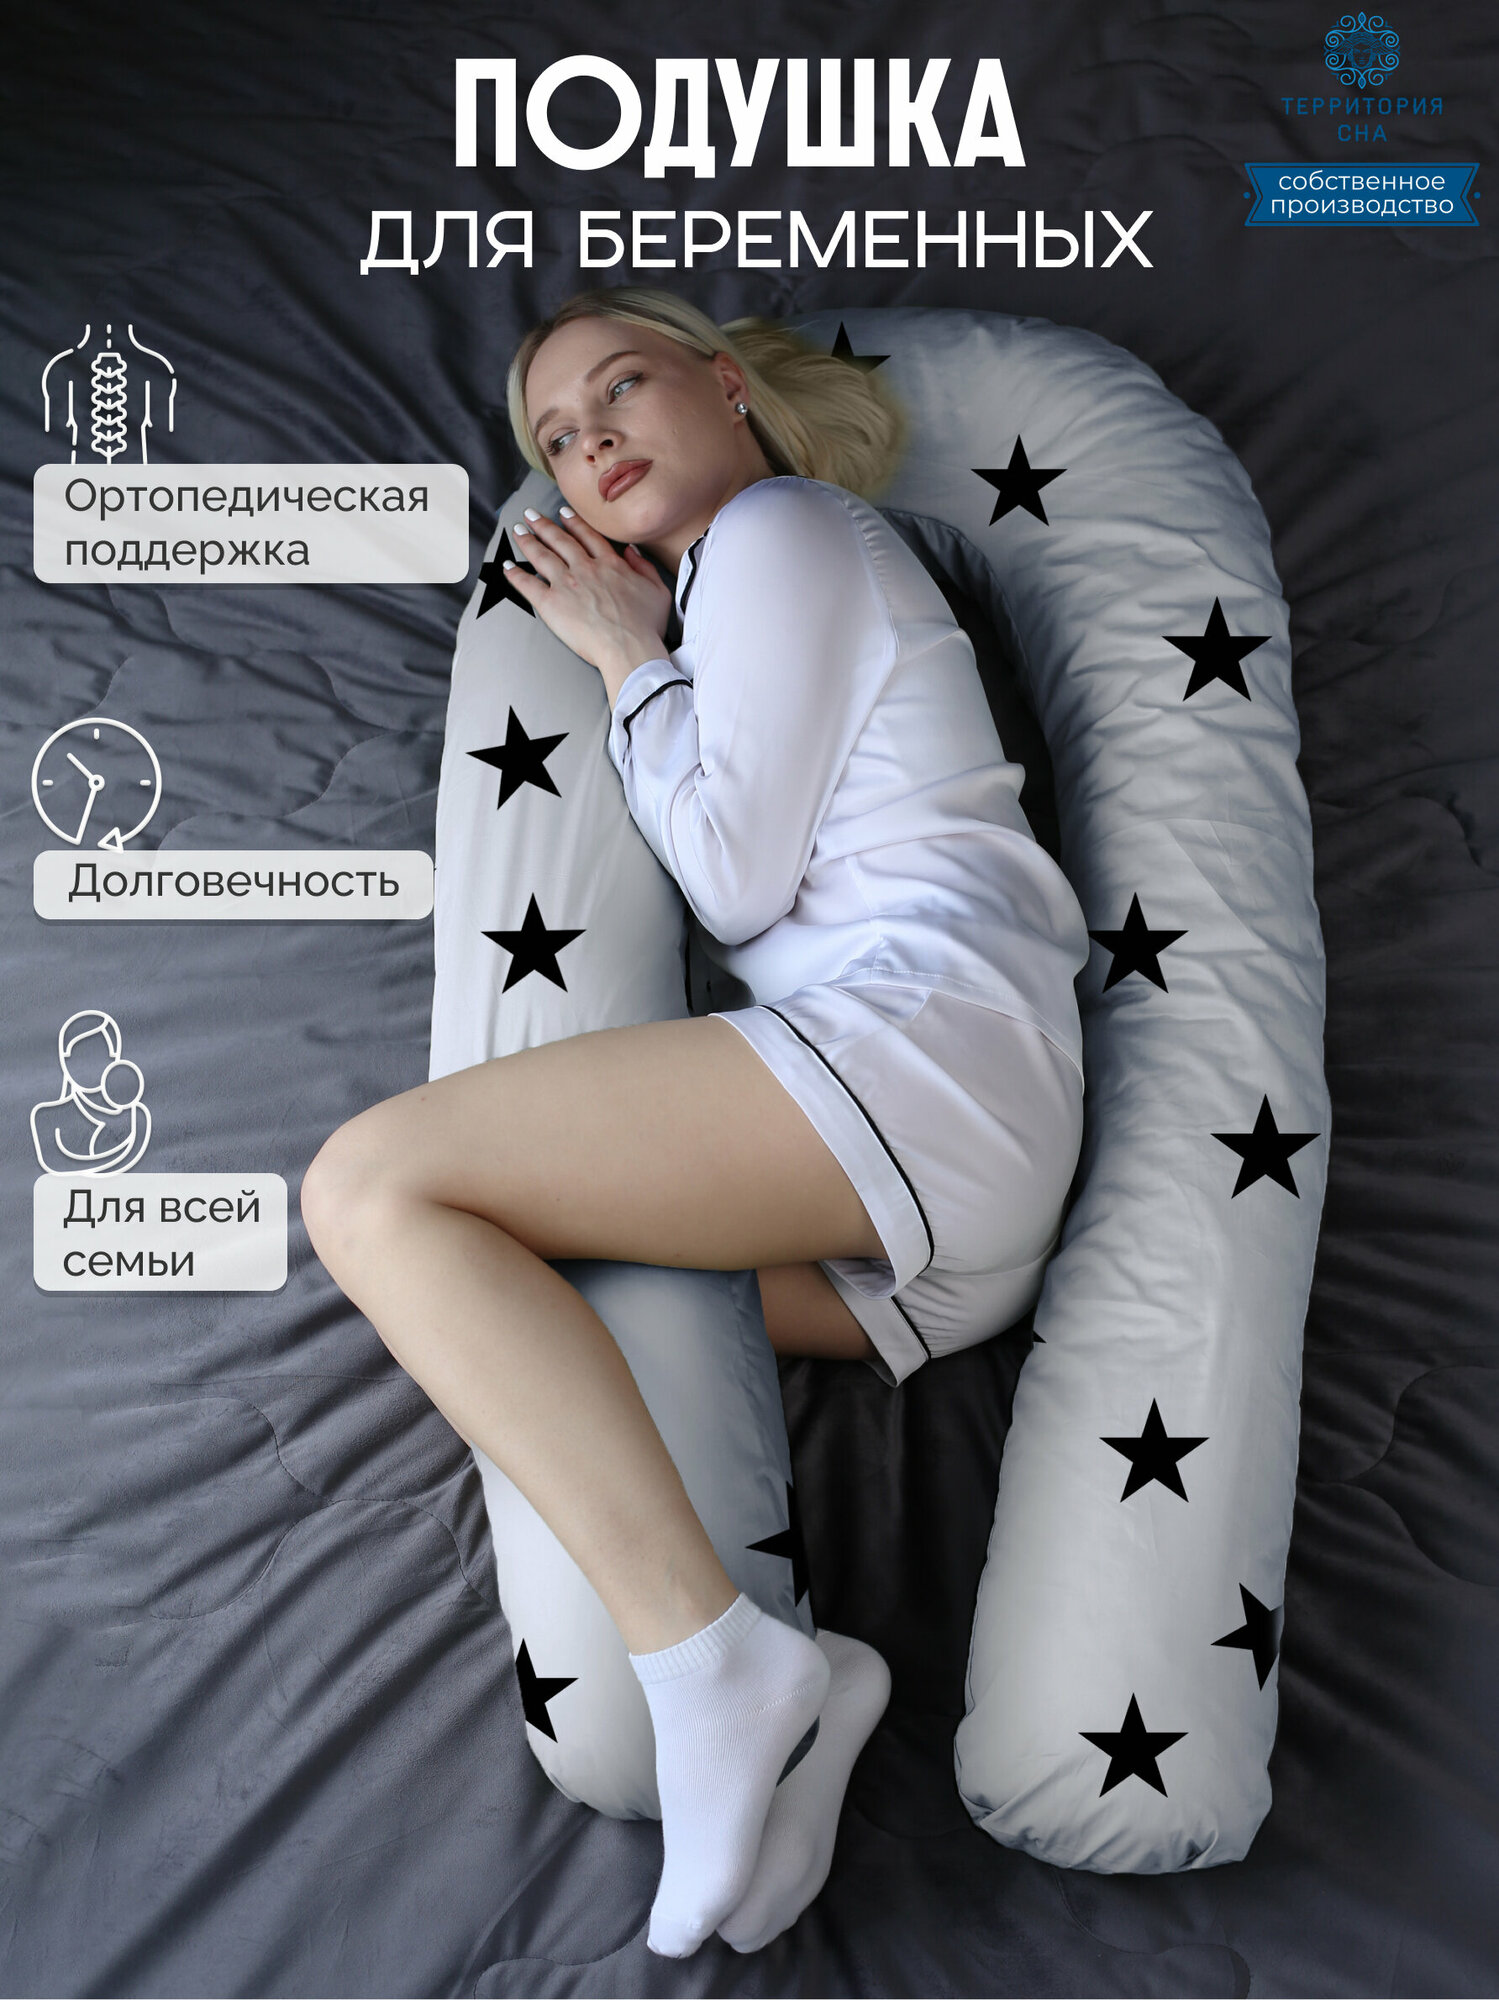 Анатомическая подушка для беременных и корящих мам с наполнителем из пенной крошки, расцветка: Белая ночь.